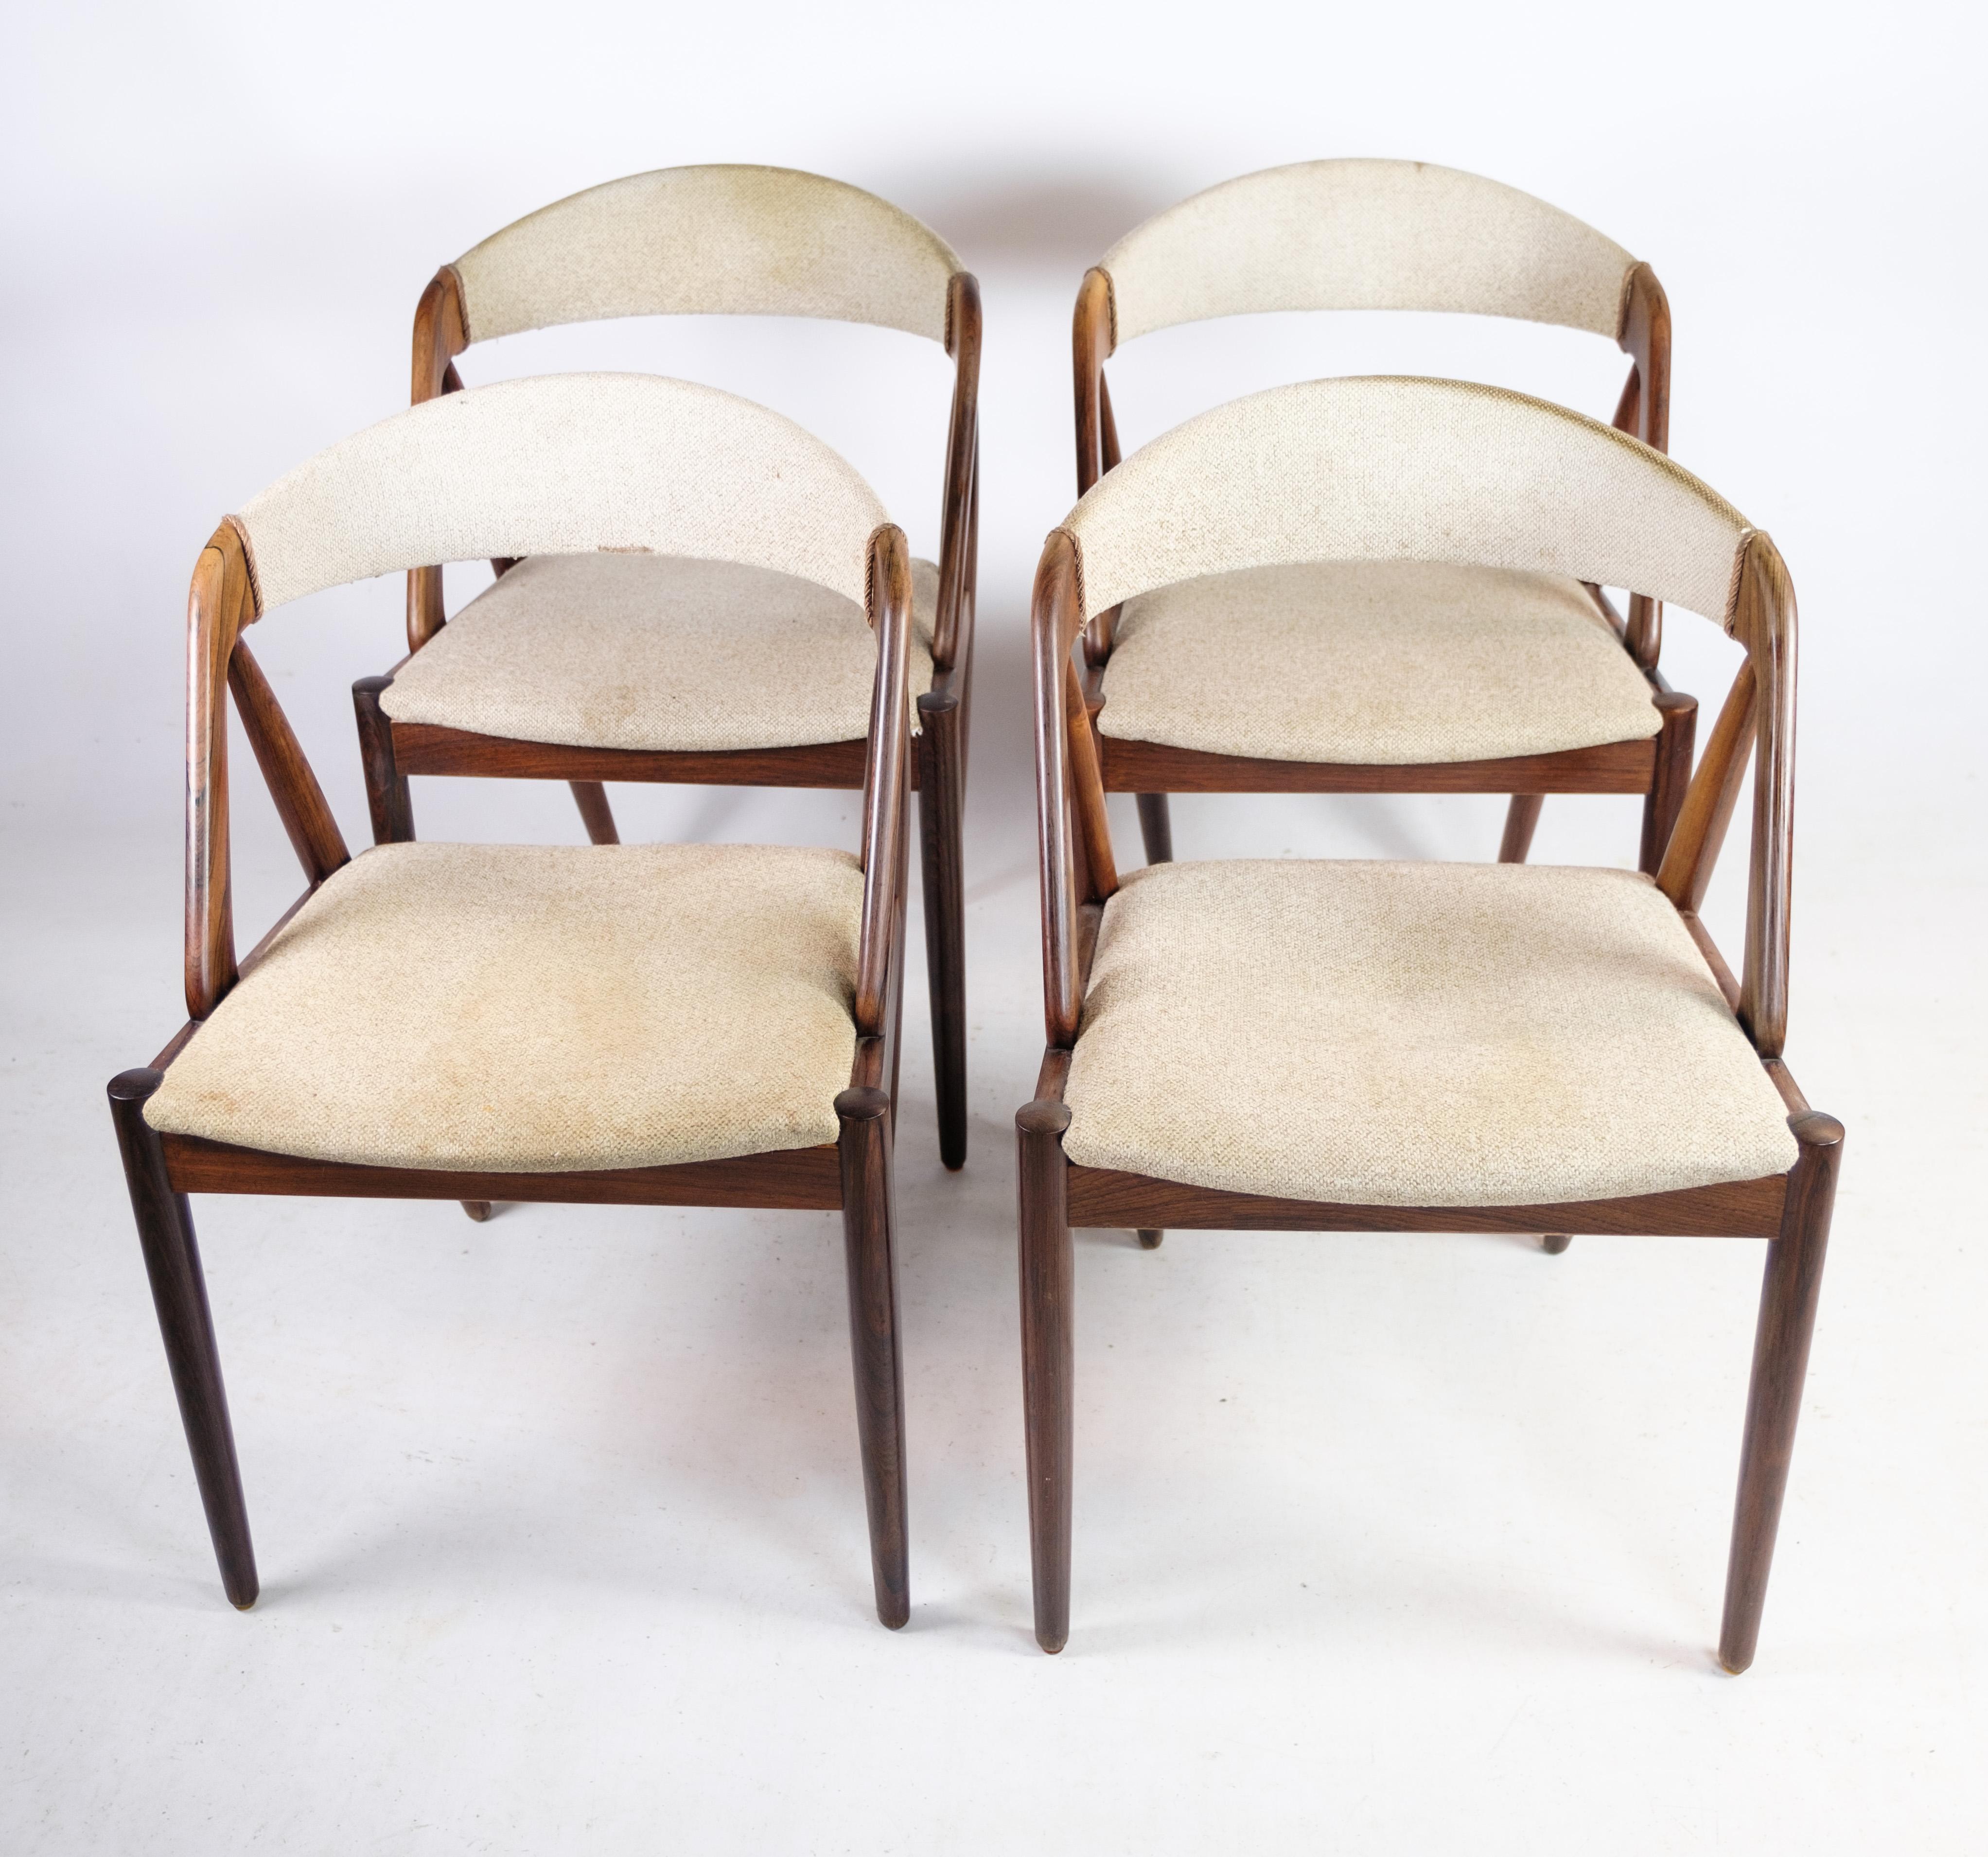 Ein Satz von vier Esszimmerstühlen, Modell 31, entworfen von dem bekannten dänischen Designer Kai Kristiansen in den 1960er Jahren. Diese exquisiten Stühle mit Palisanderholzrahmen von Schou Andersen zeigen die zeitlose Eleganz des dänischen Designs